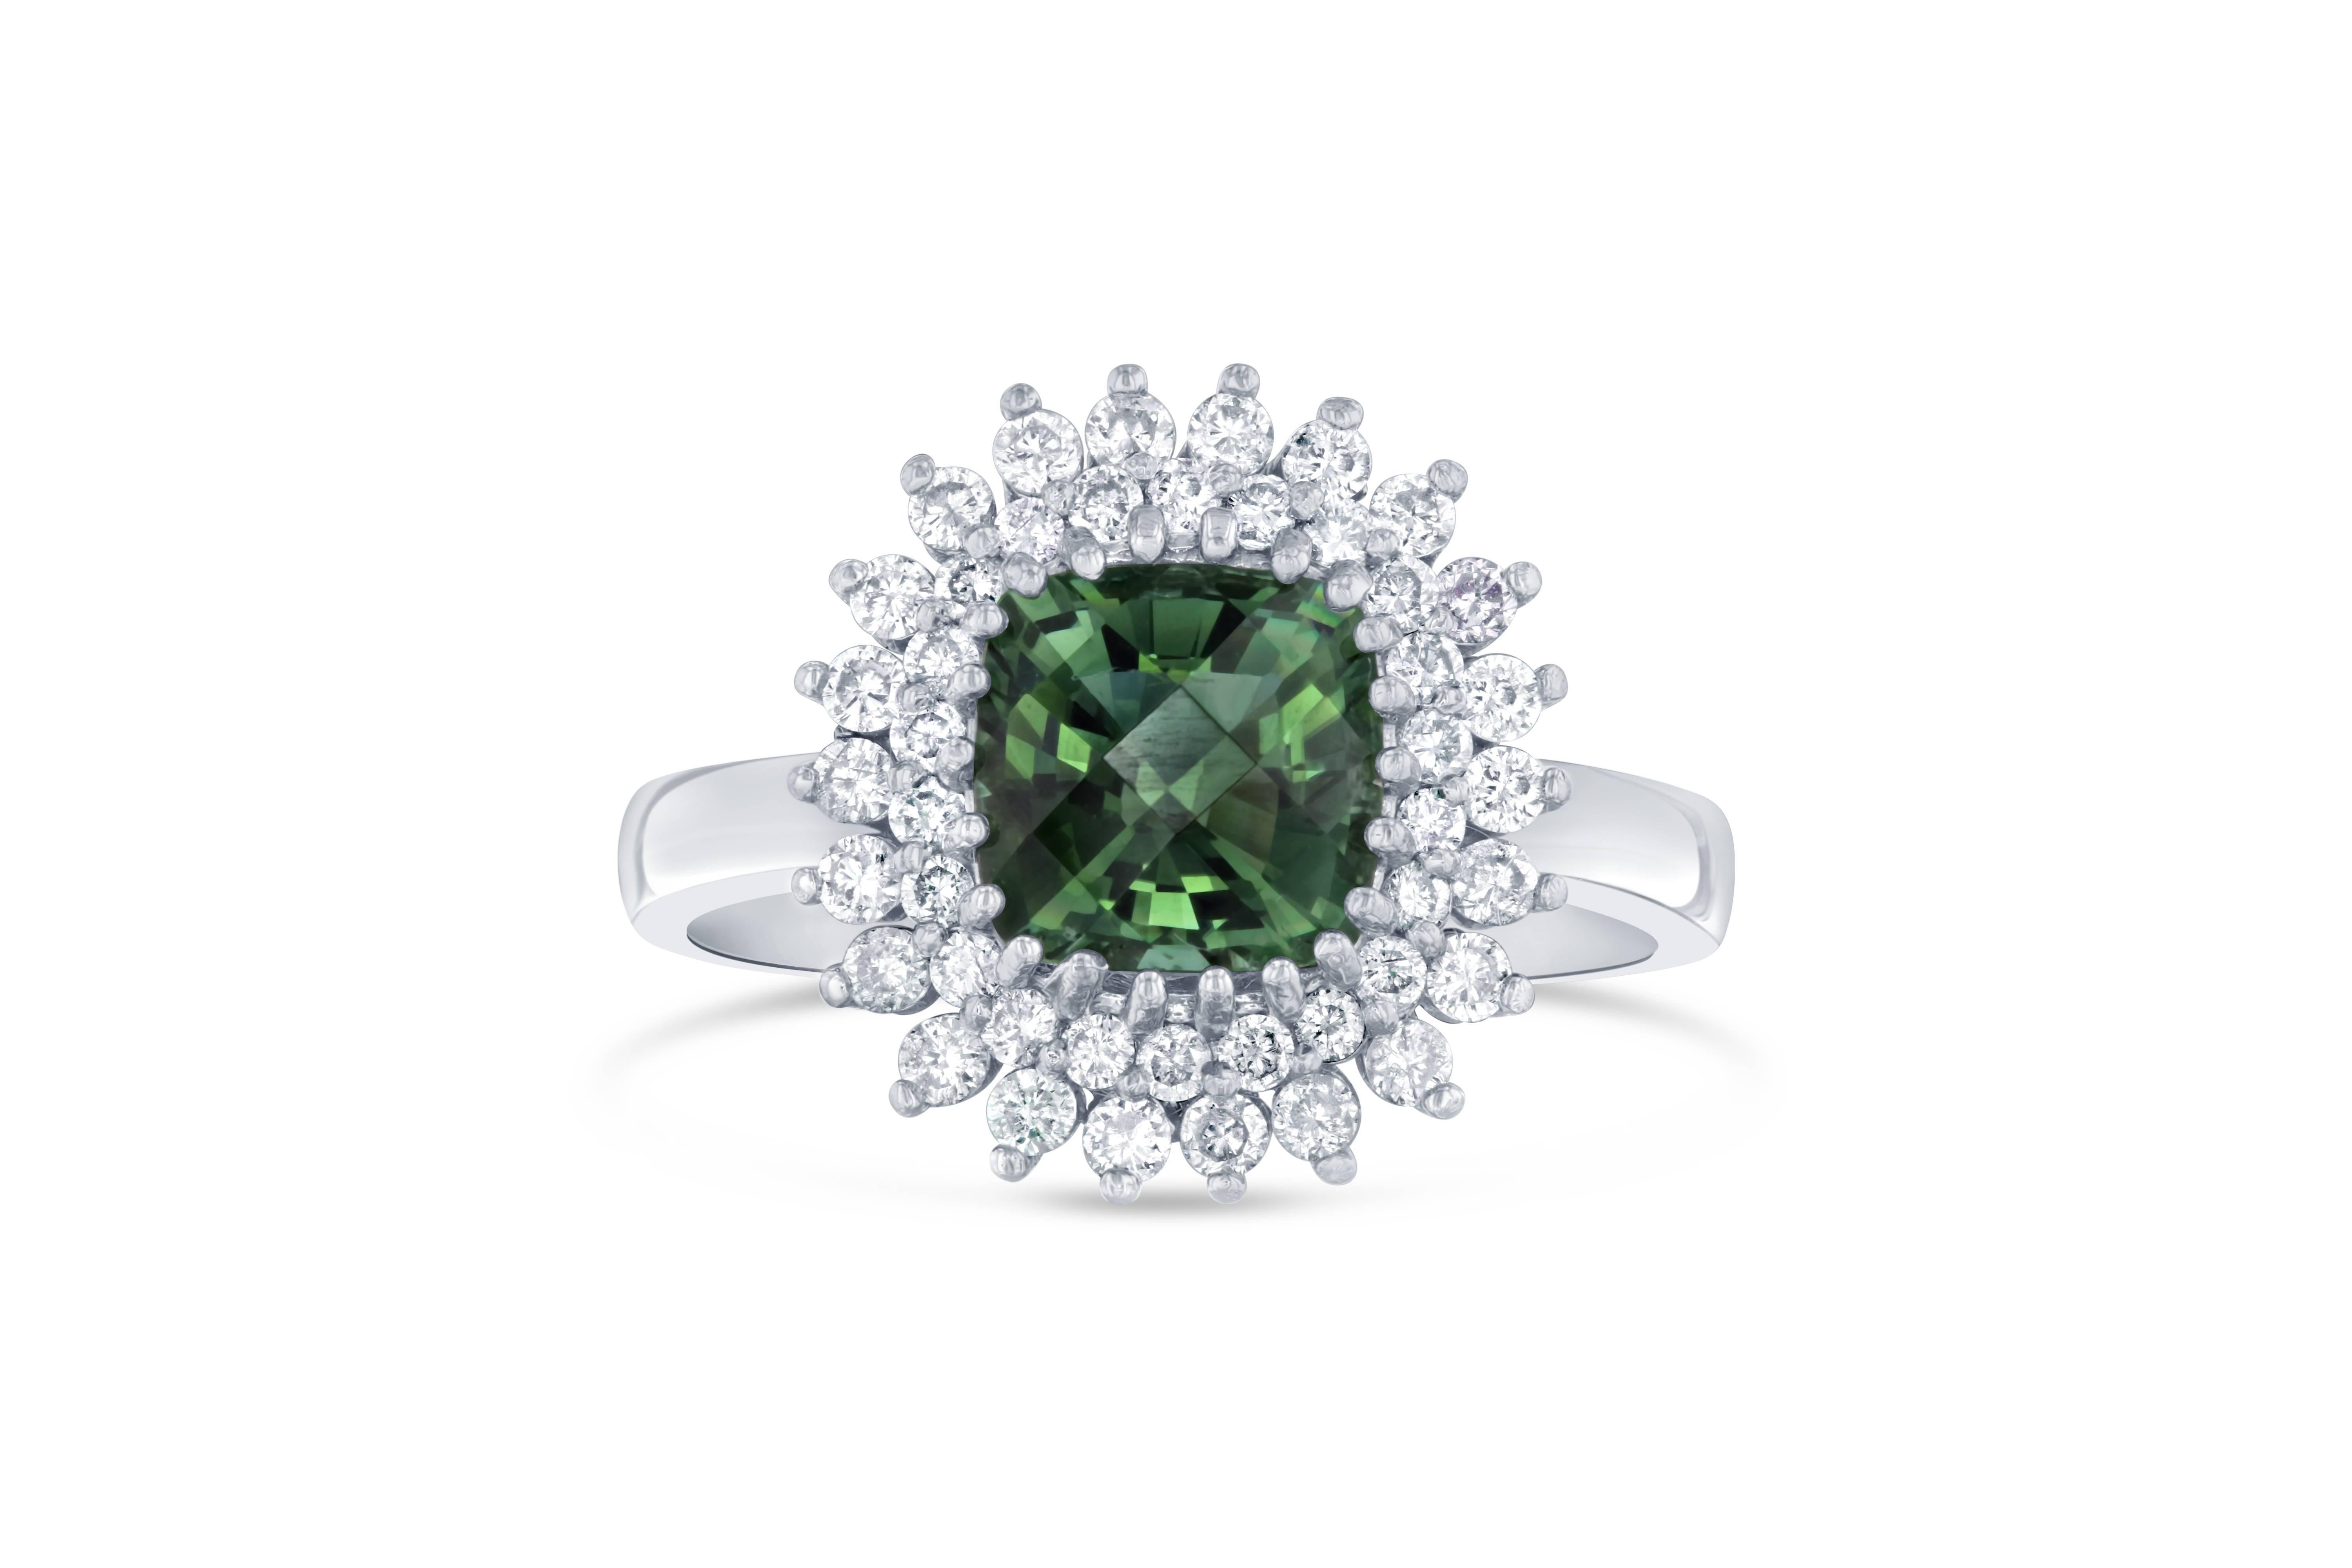 Dieser Ring hat einen faszinierenden grünen Turmalin im Asscher-Schliff mit einem Gewicht von 1,67 Karat und 44 Diamanten im Rundschliff mit einem Gewicht von 0,54 Karat. Das Gesamtkaratgewicht des Rings beträgt 2,21 Karat. 
Er ist in 14K Weißgold